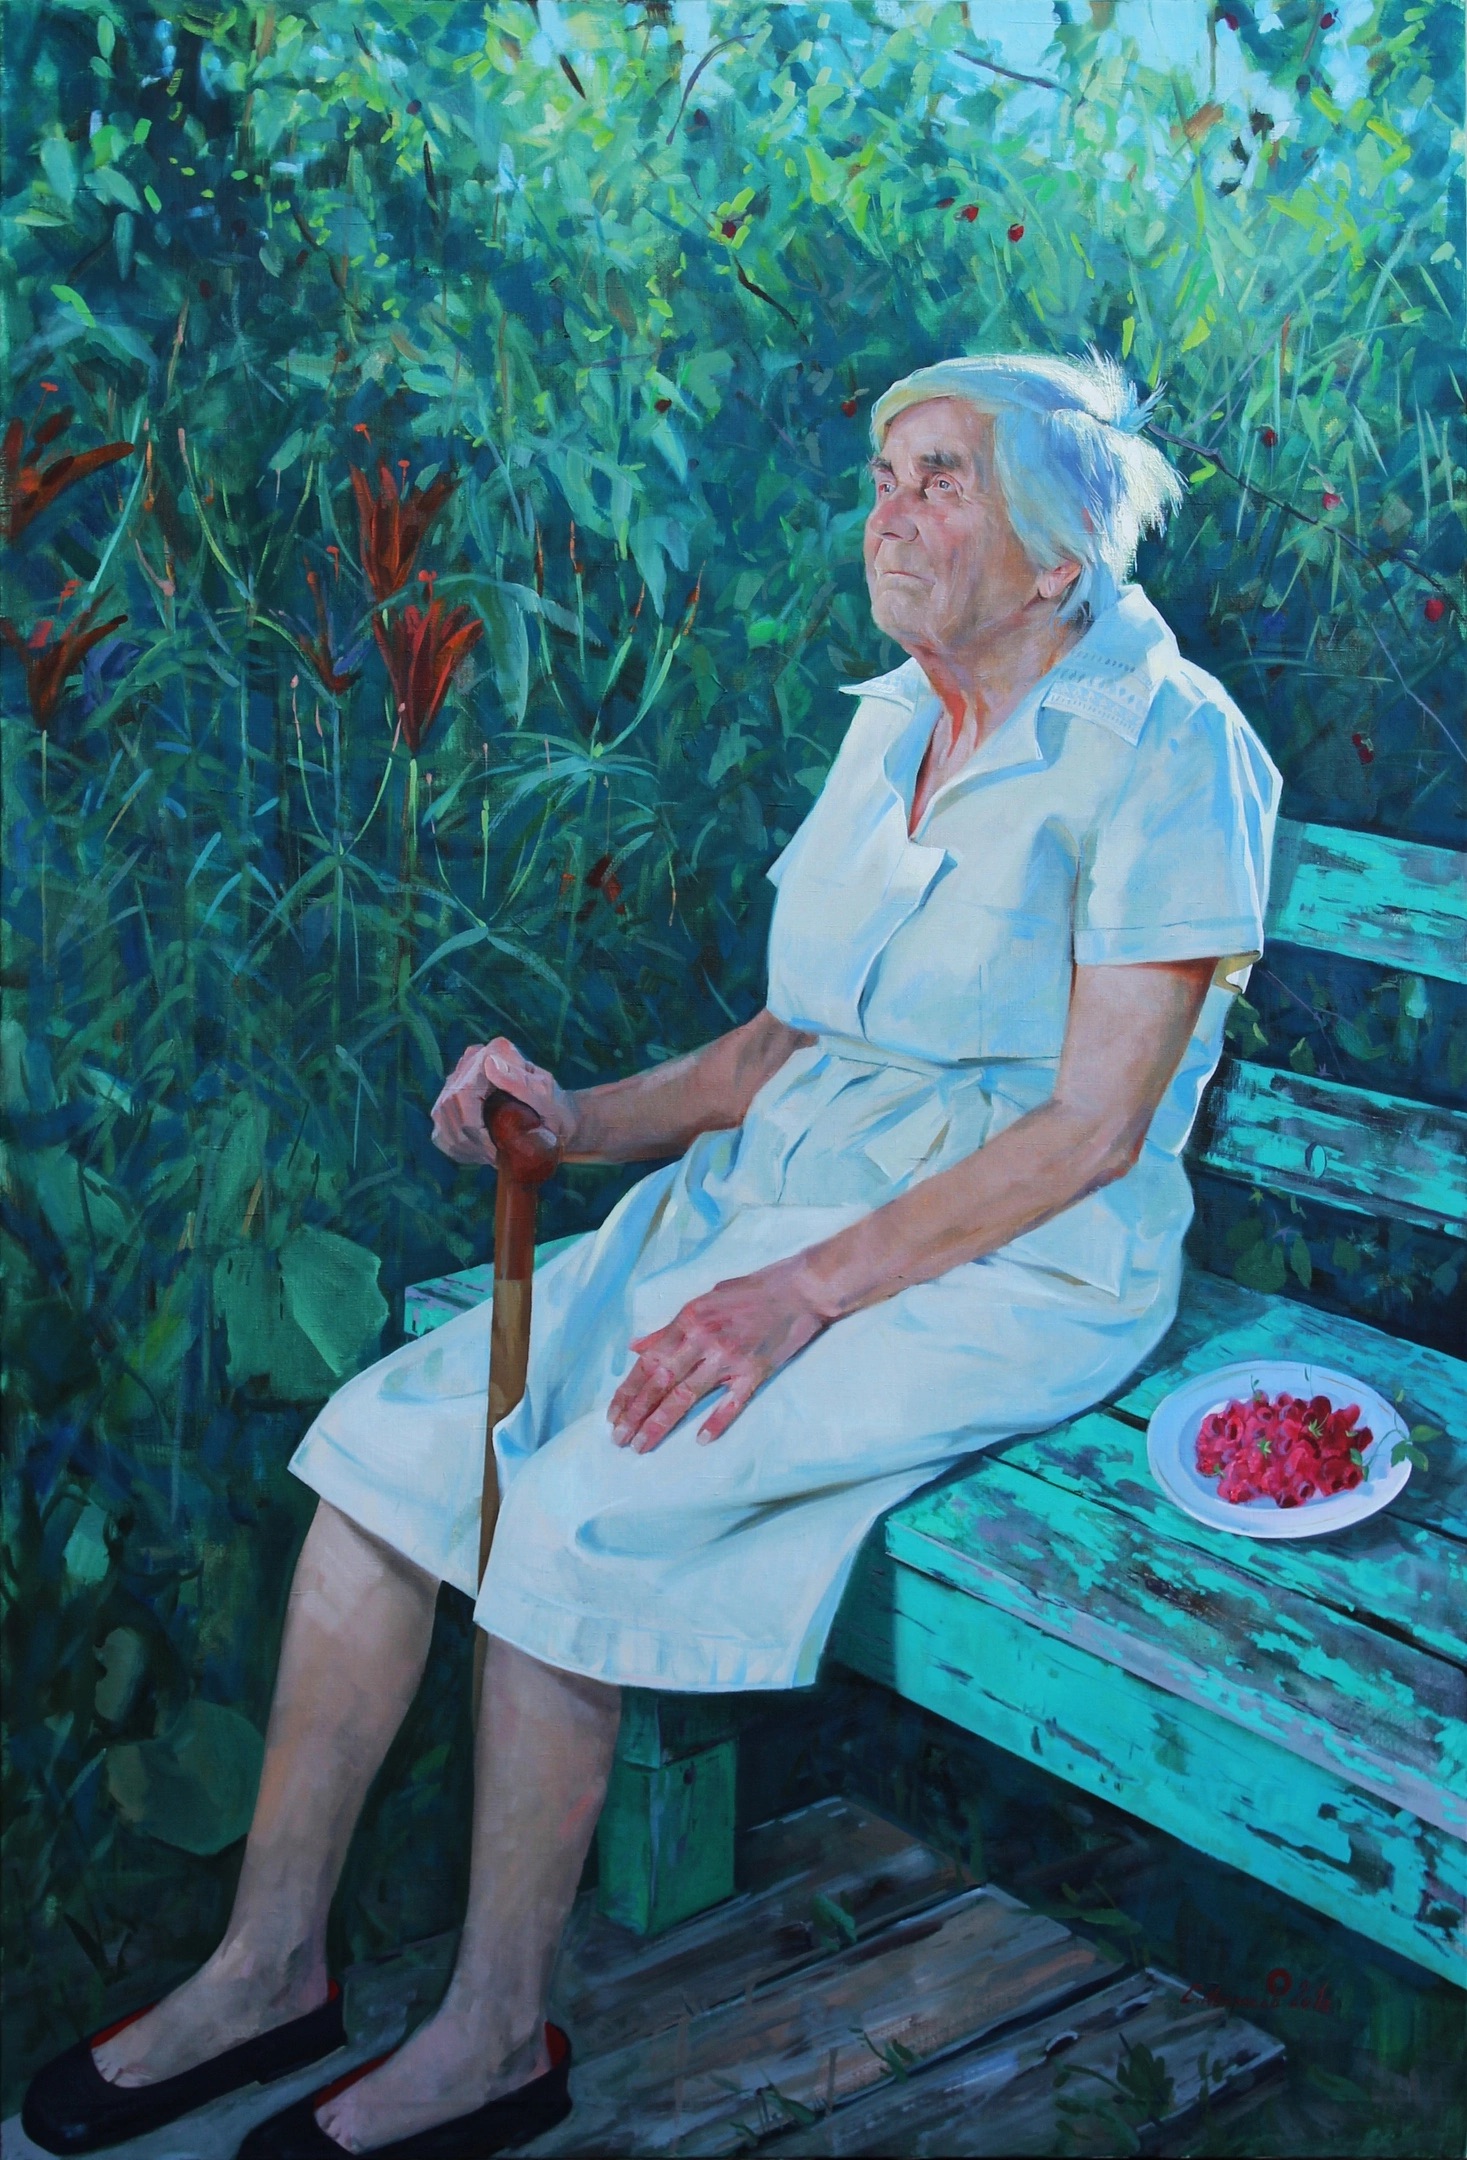 Raspberries - 1, Sergey Nekrasov, Buy the painting Oil